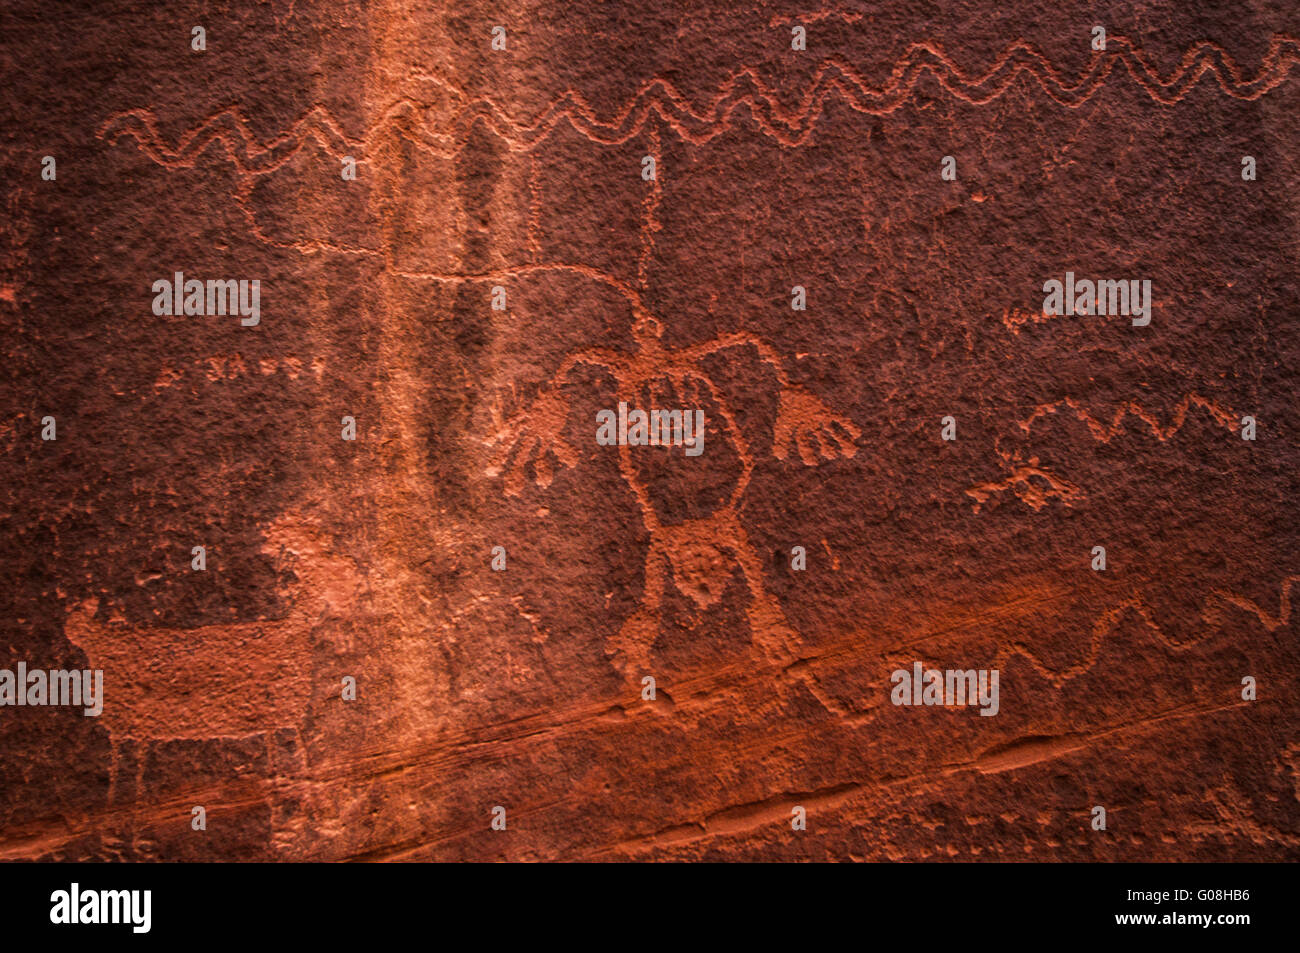 Peinture rupestre indienne Monument Valley aux Etats-Unis. La texture Banque D'Images